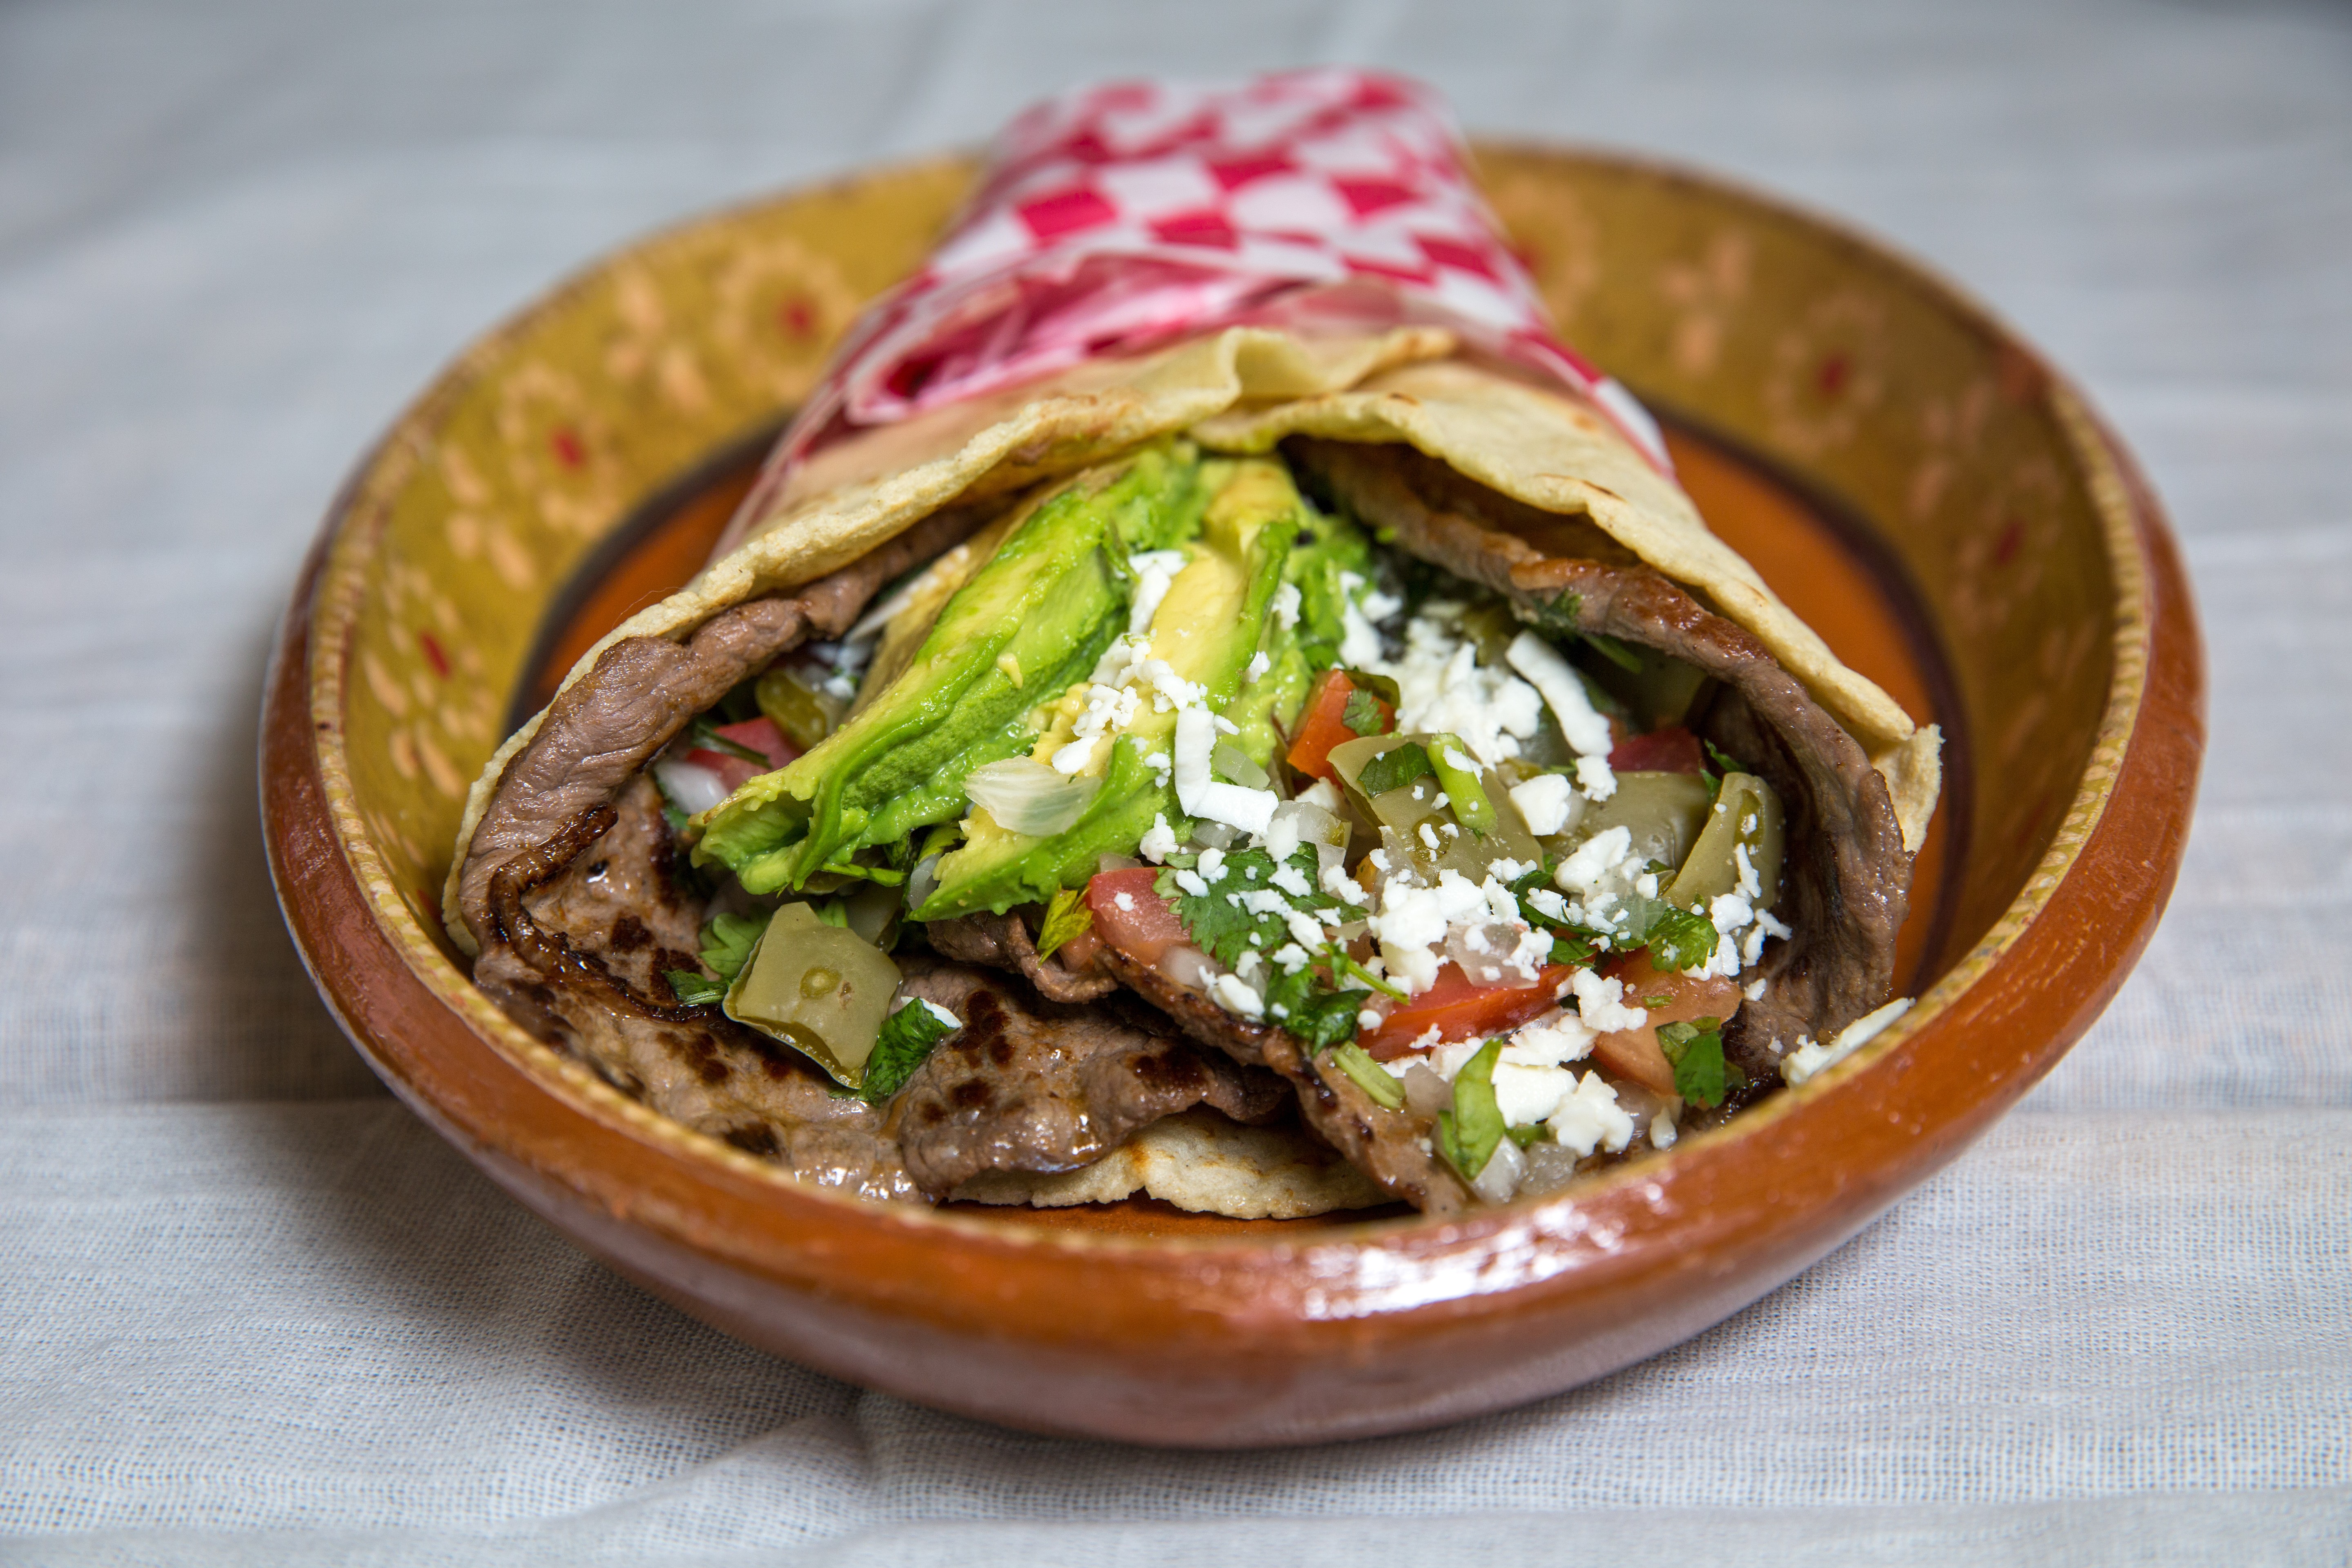 Antojitos La Poblanita Specializes in Tacos and Cemitas of Puebla, Mexico |  Westword